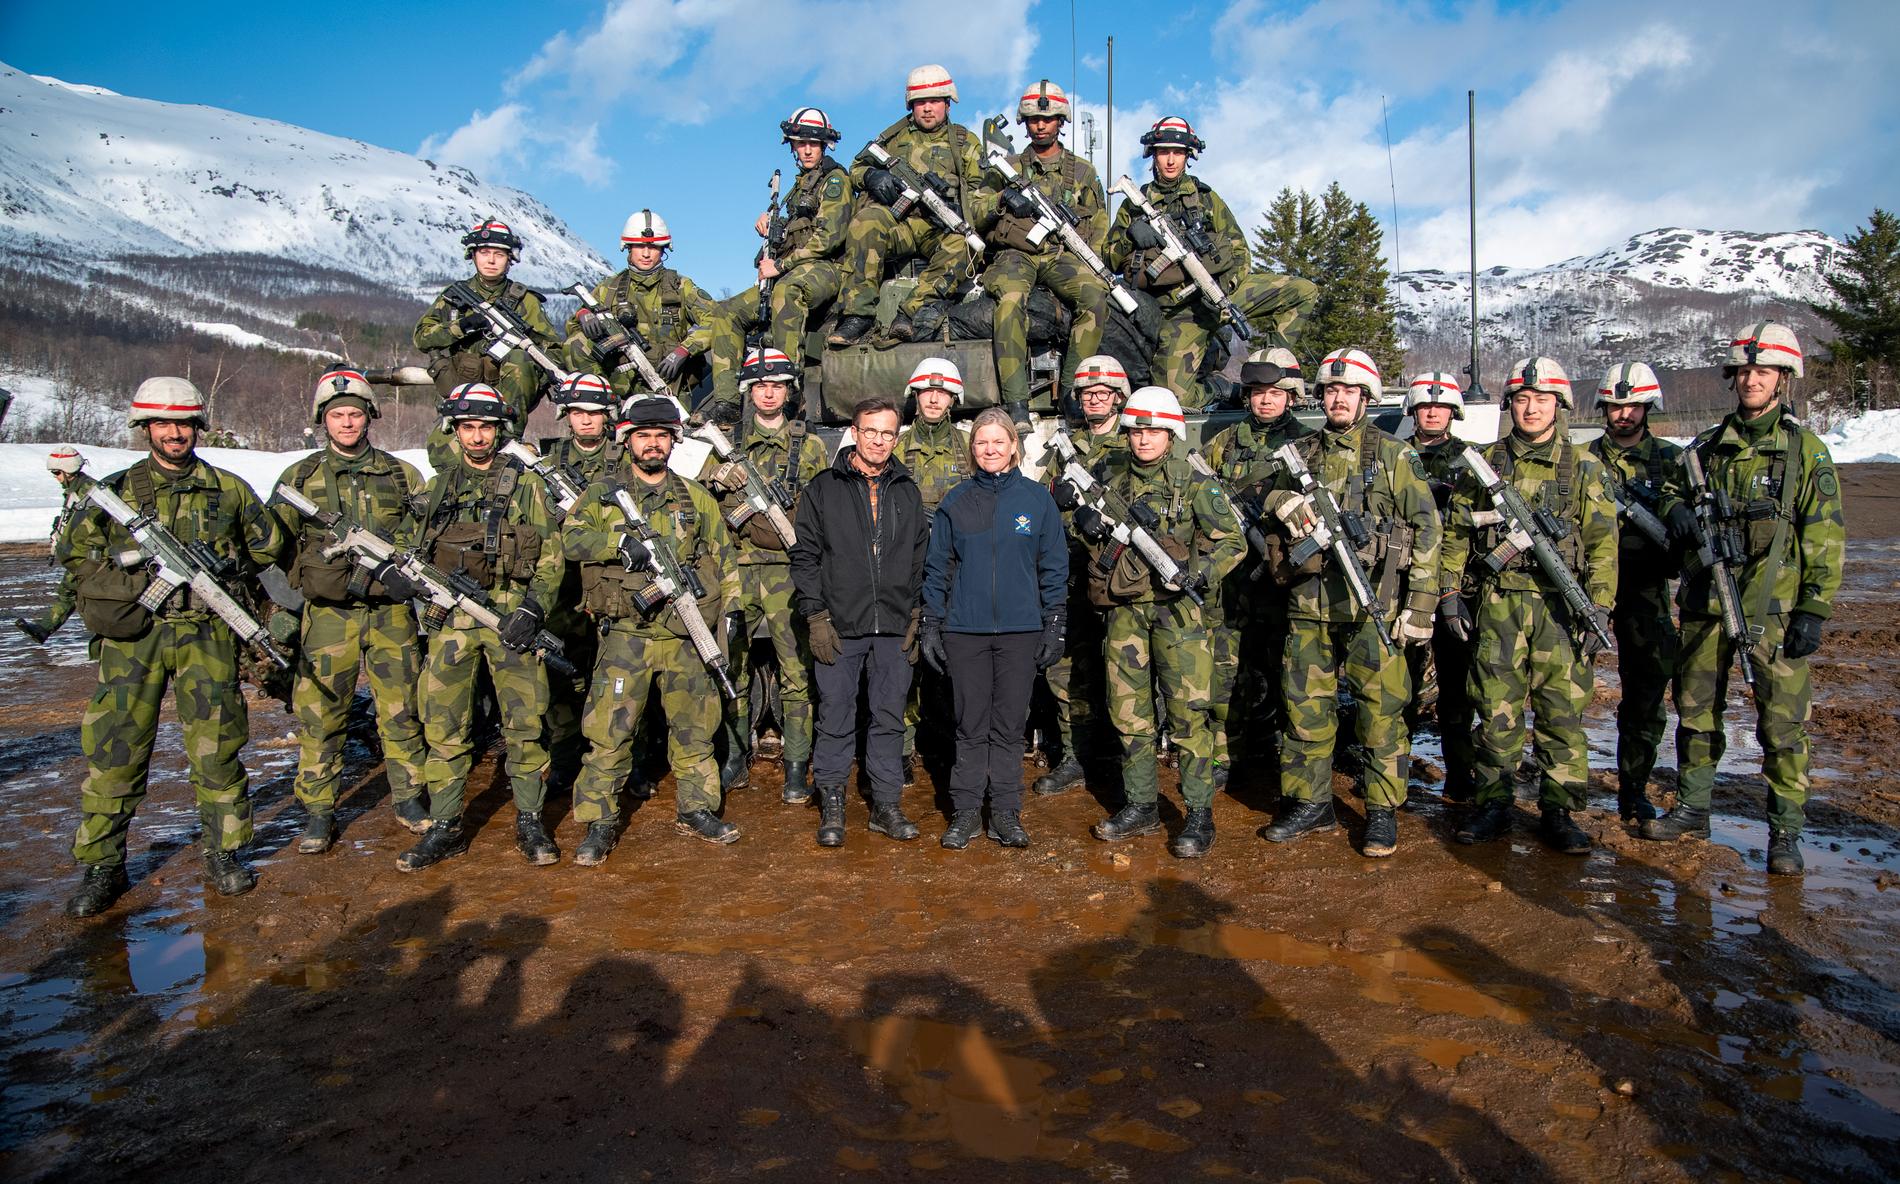 Sverige skickar cirka 1 500 soldater och officerare till Cold Response 2022. 